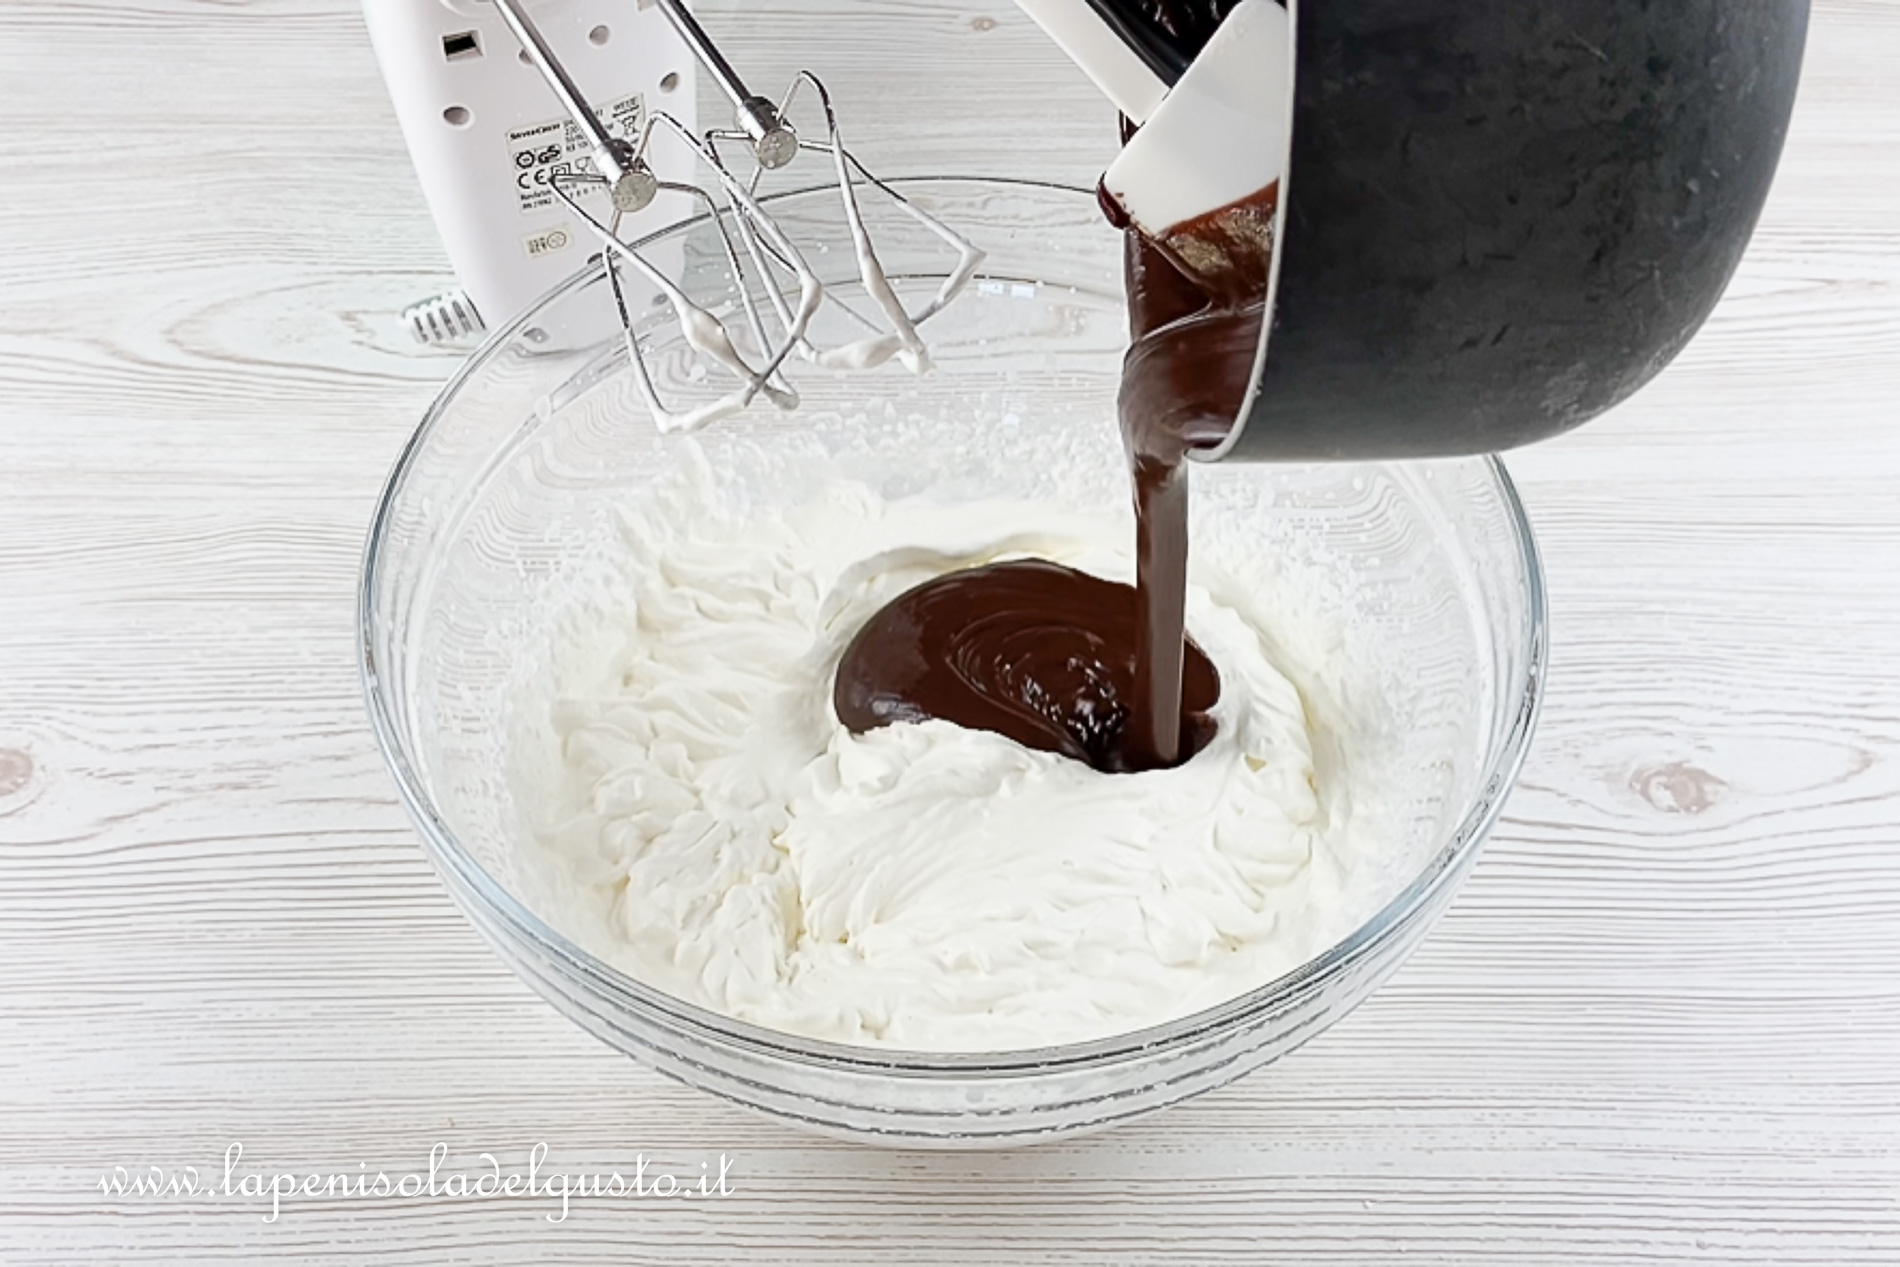 monto la panna per prepaarare la ricetta della mousse al cioccolato facile senza uova per il pandoro